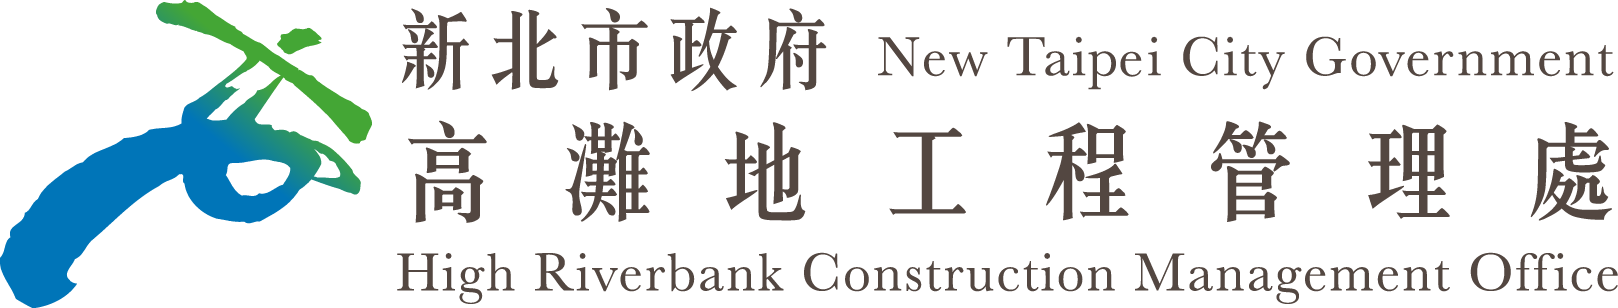 新北市政府高灘地工程管理處Logo